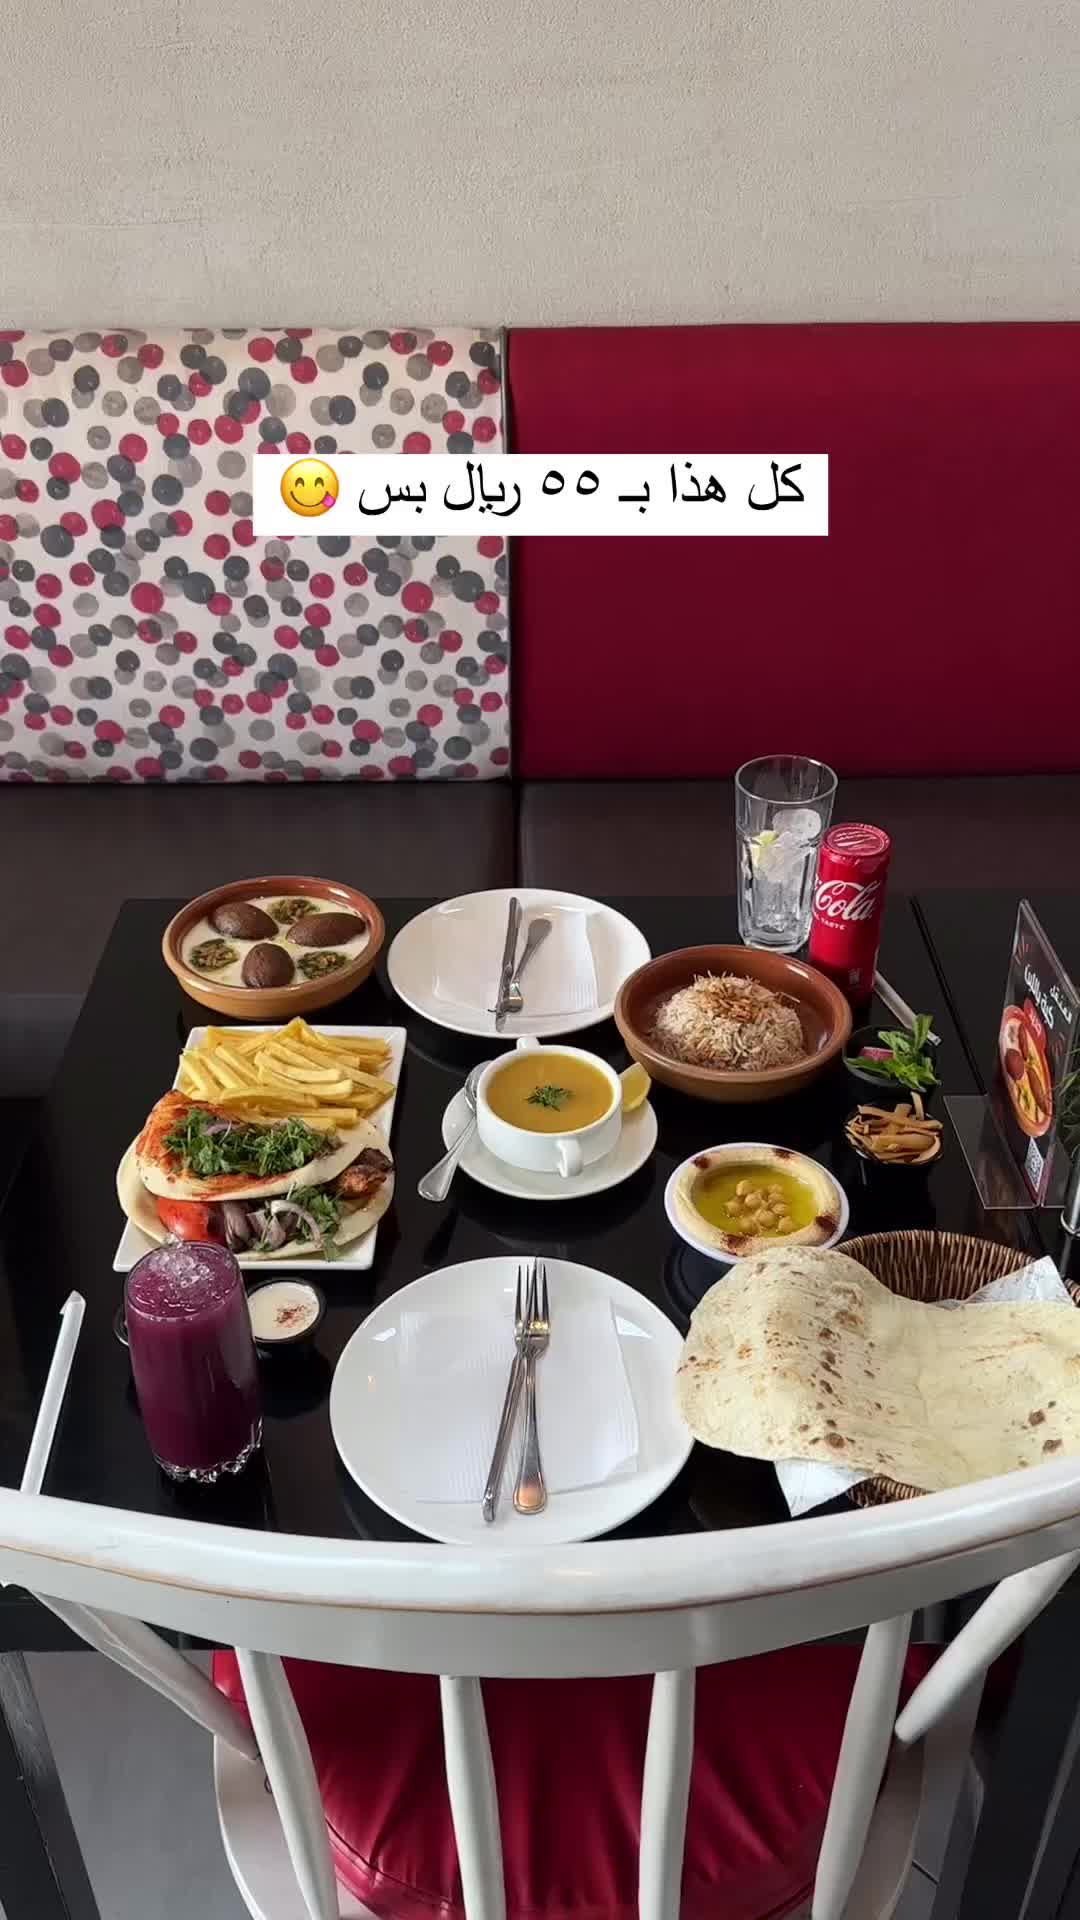 Best Lebanese Restaurant in Jeddah - Lunch for 55 SAR